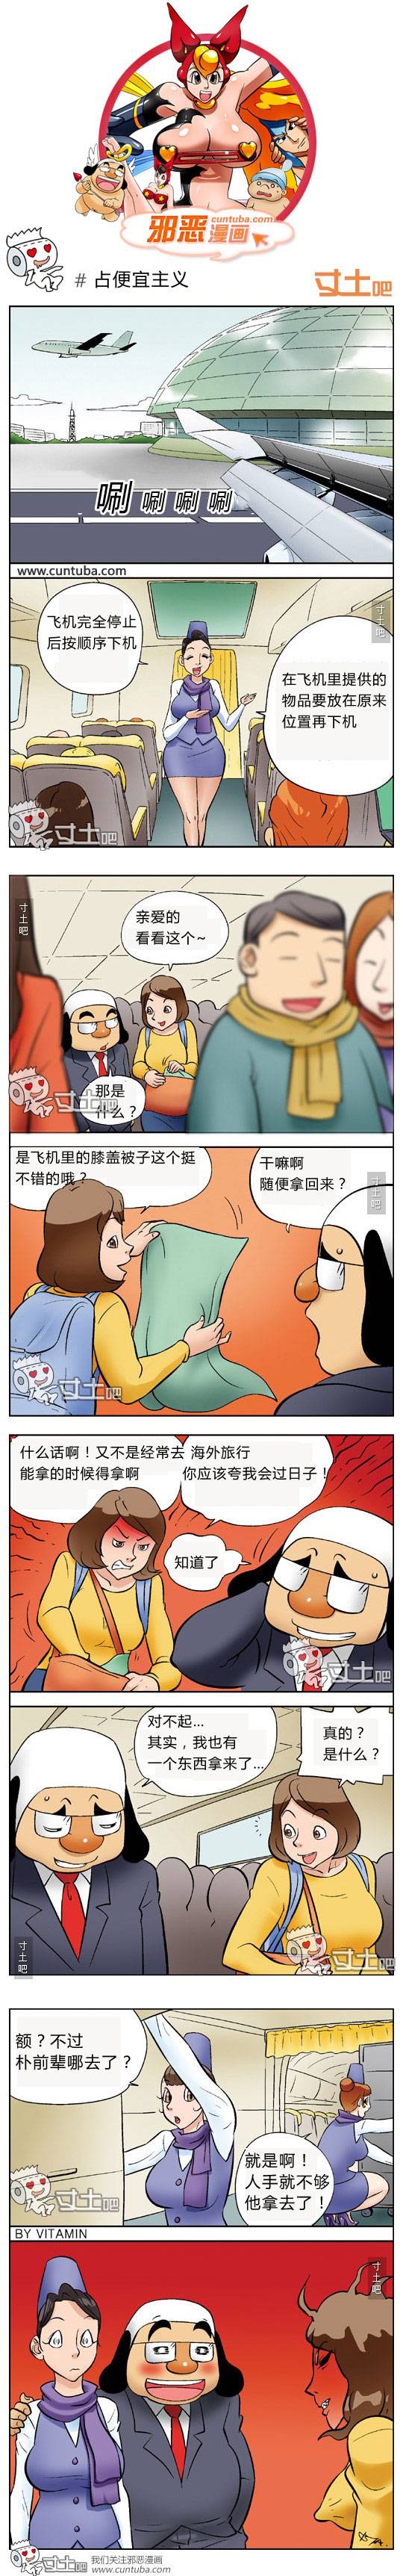 邪恶漫画爆笑囧图第117刊：欲望